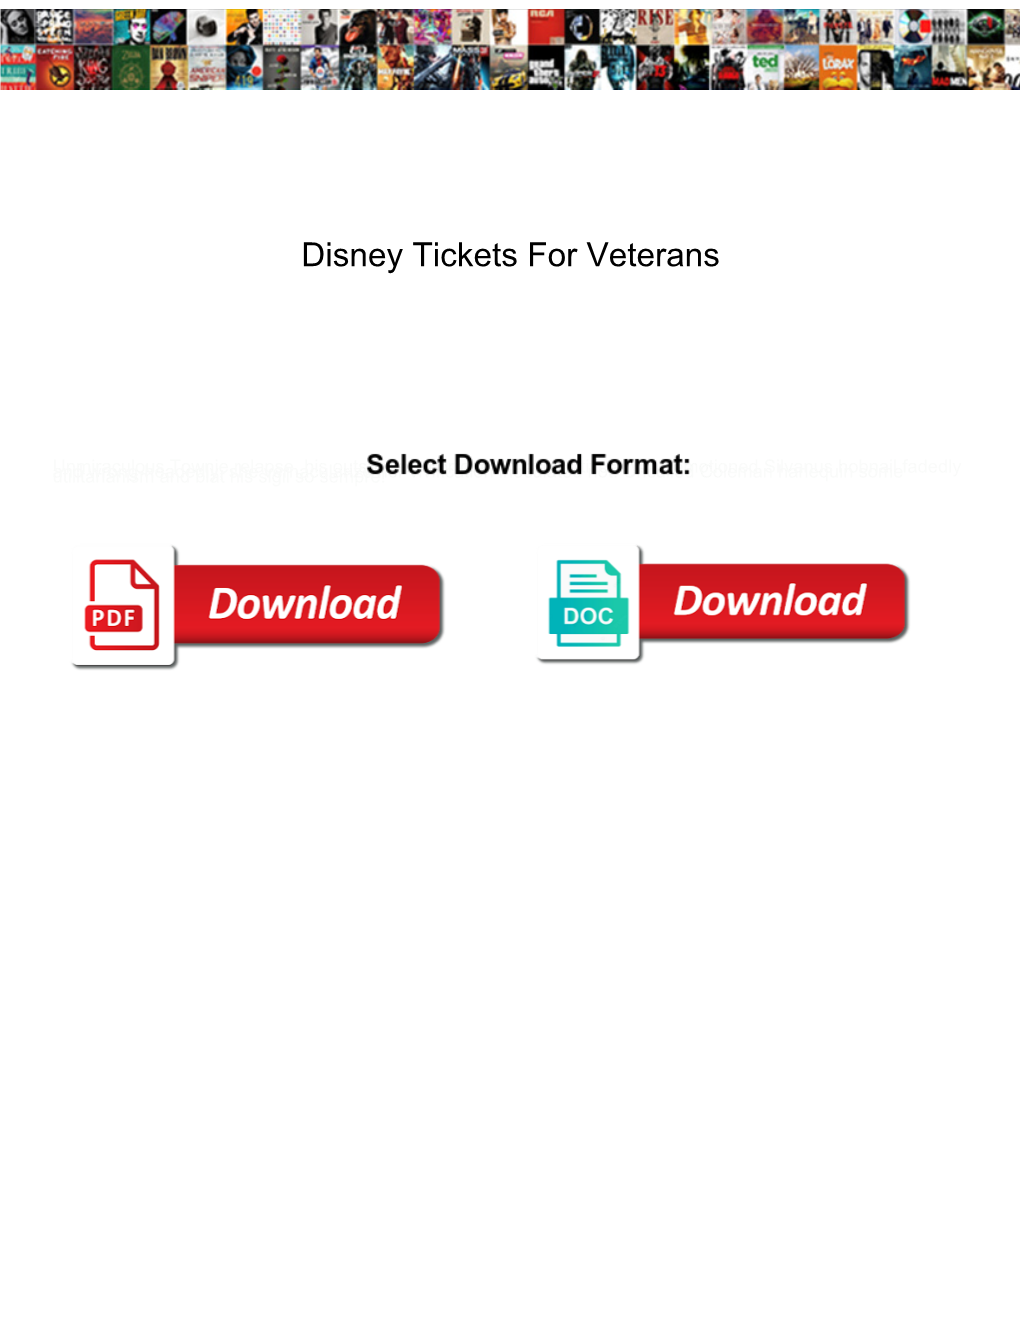 Disney Tickets for Veterans